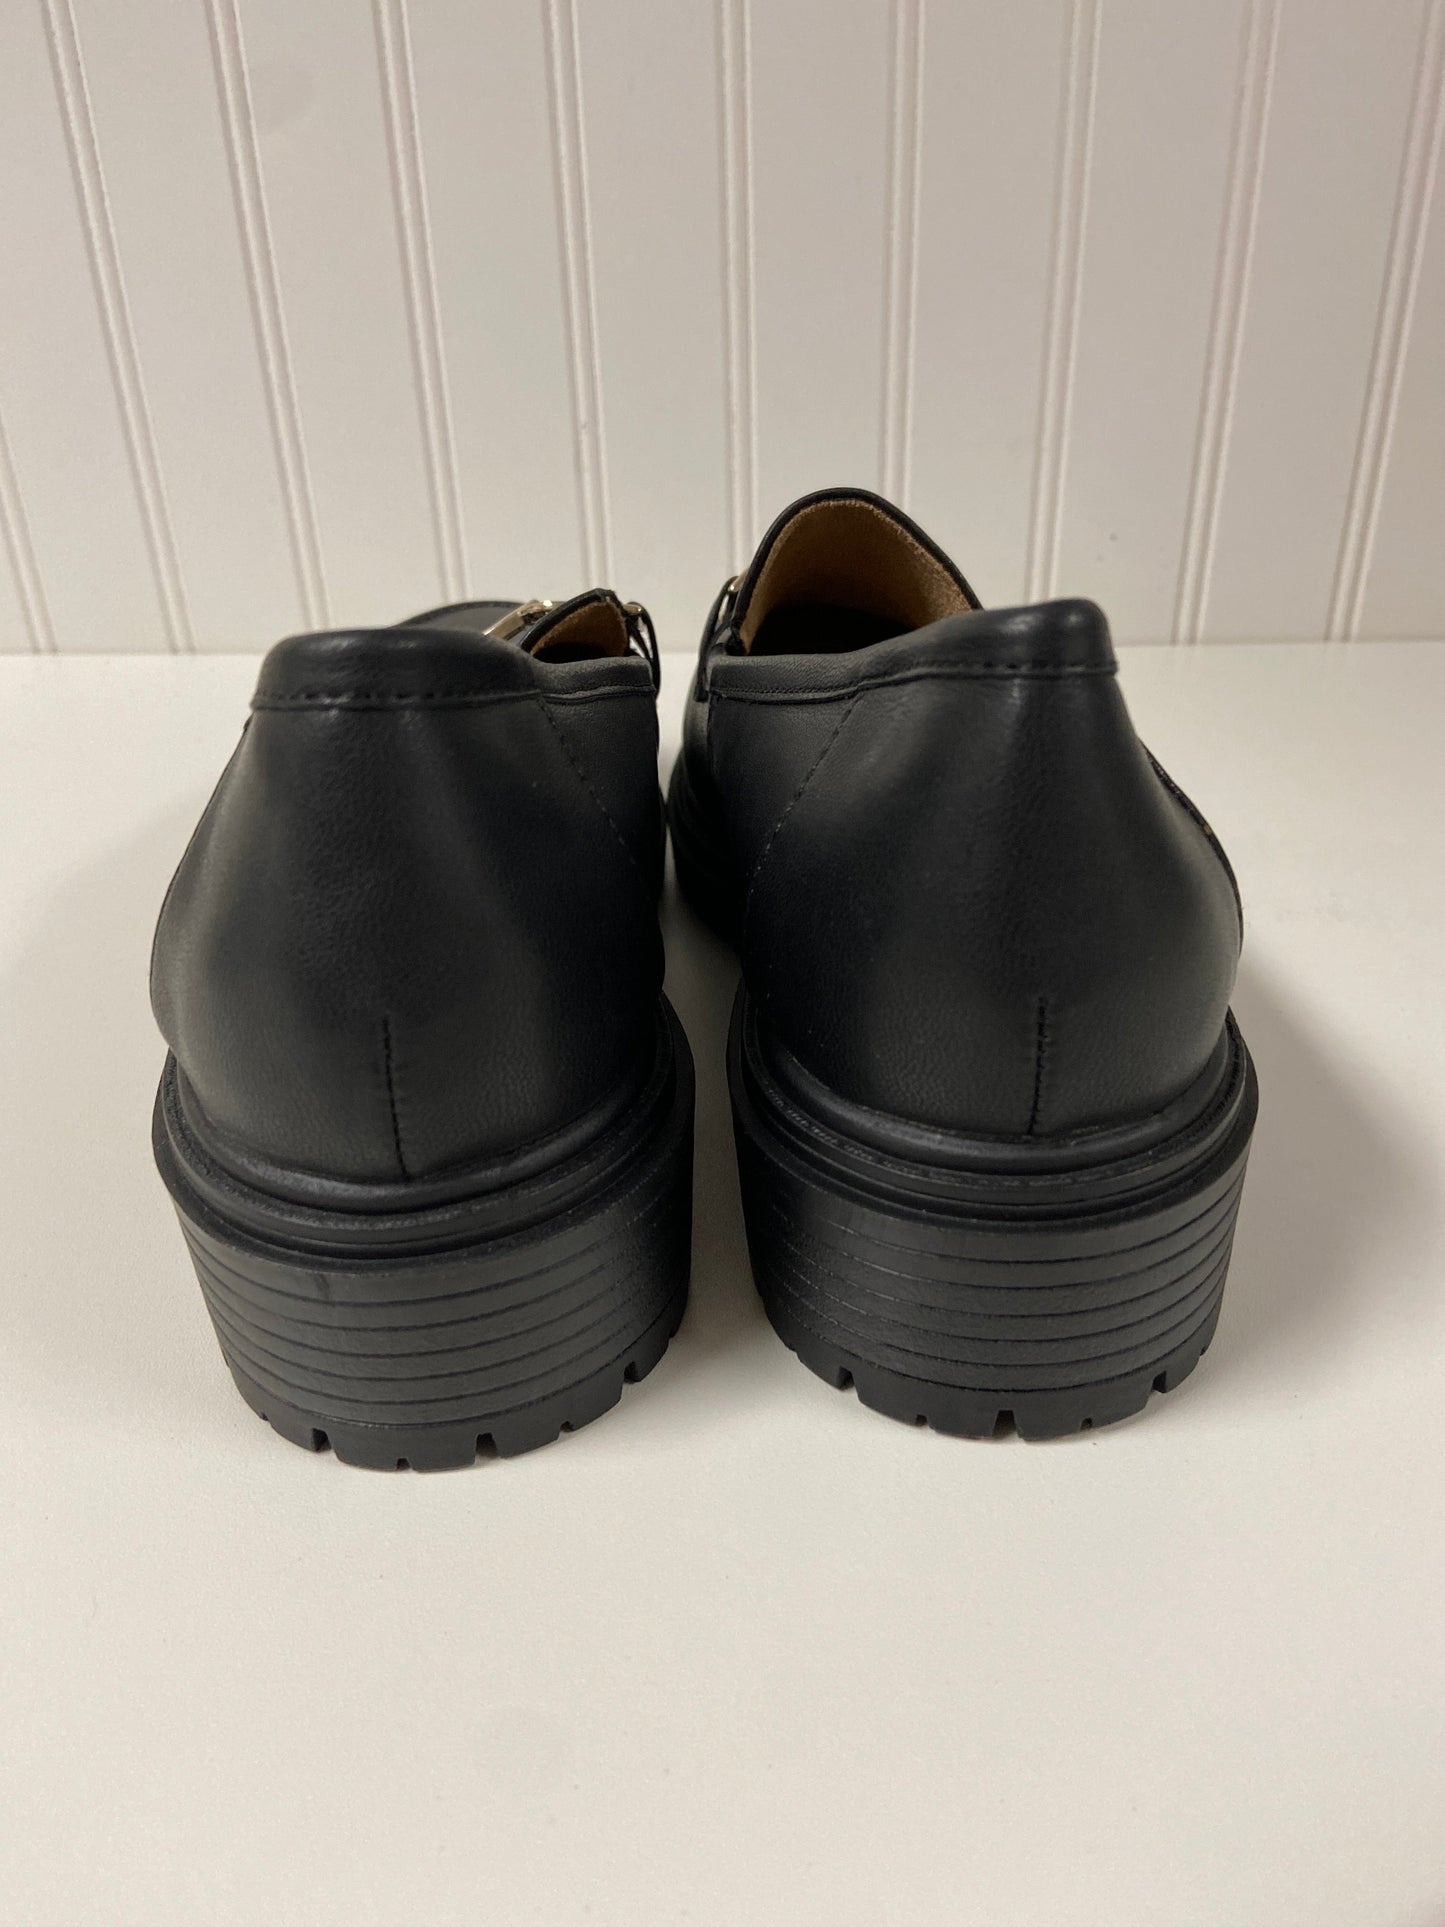 Black Shoes Flats Rachel Zoe, Size 8